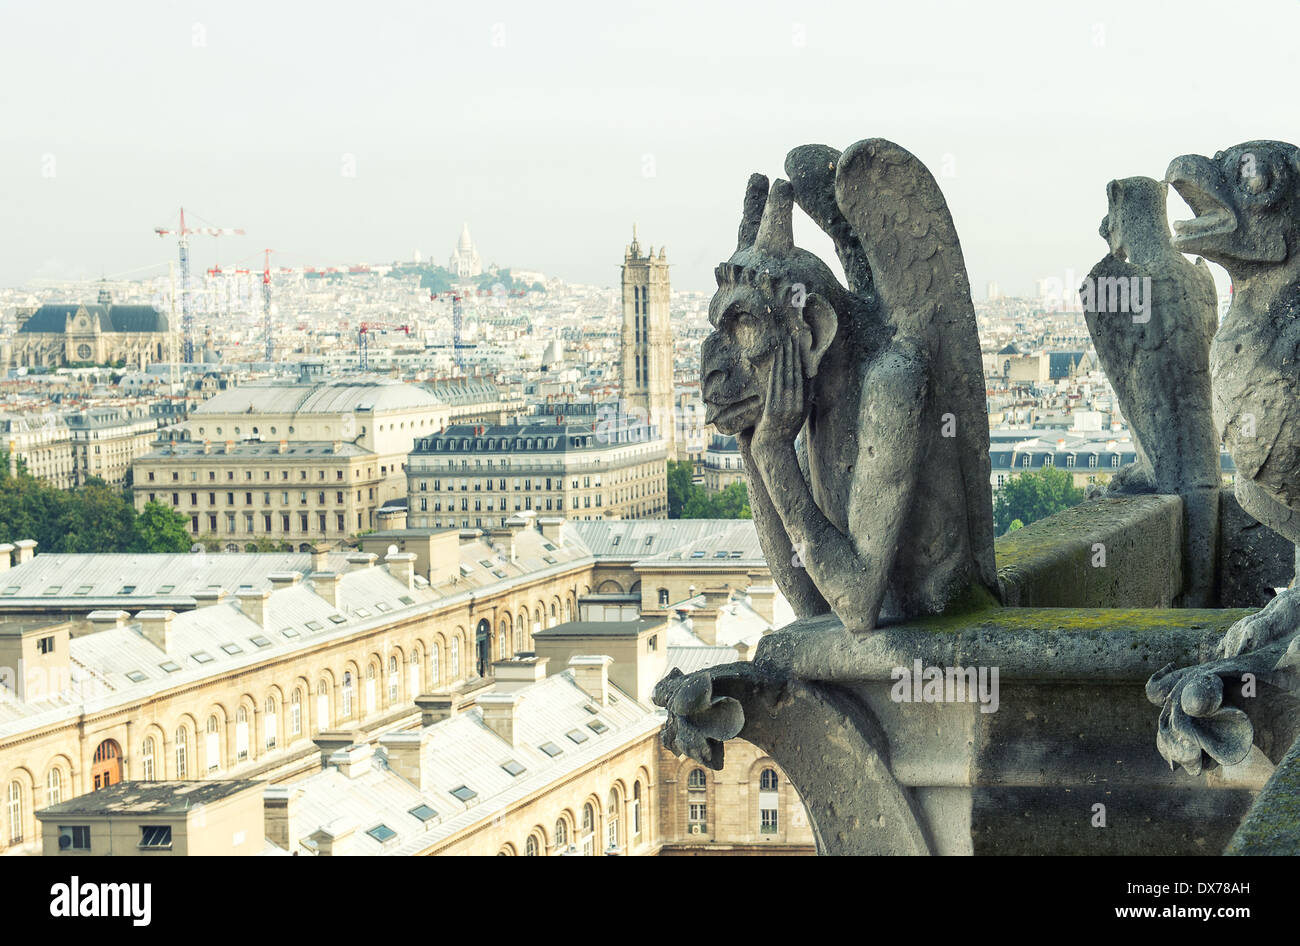 Les démons de pierre und gargouille chimère avec ville de Paris sur l'arrière-plan. Vue depuis la tour de la Cathédrale Notre Dame. look vintage photo Banque D'Images